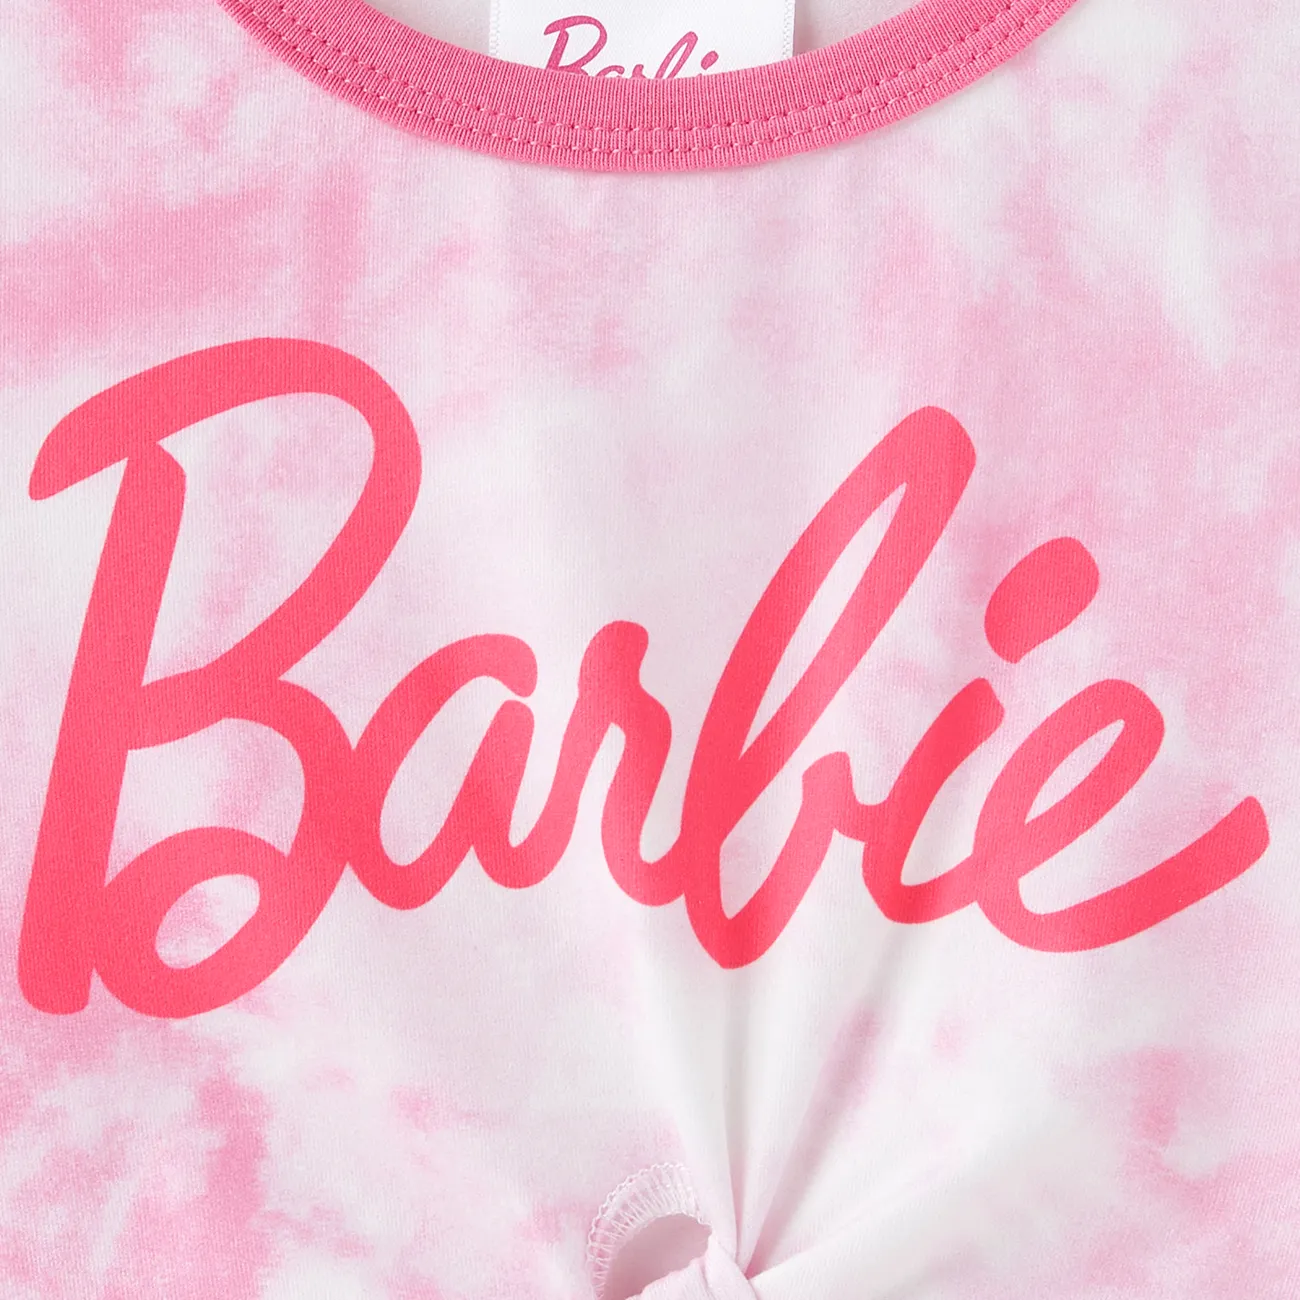 Barbie Ragazza Nodi Dolce Maglietta Rosa big image 1